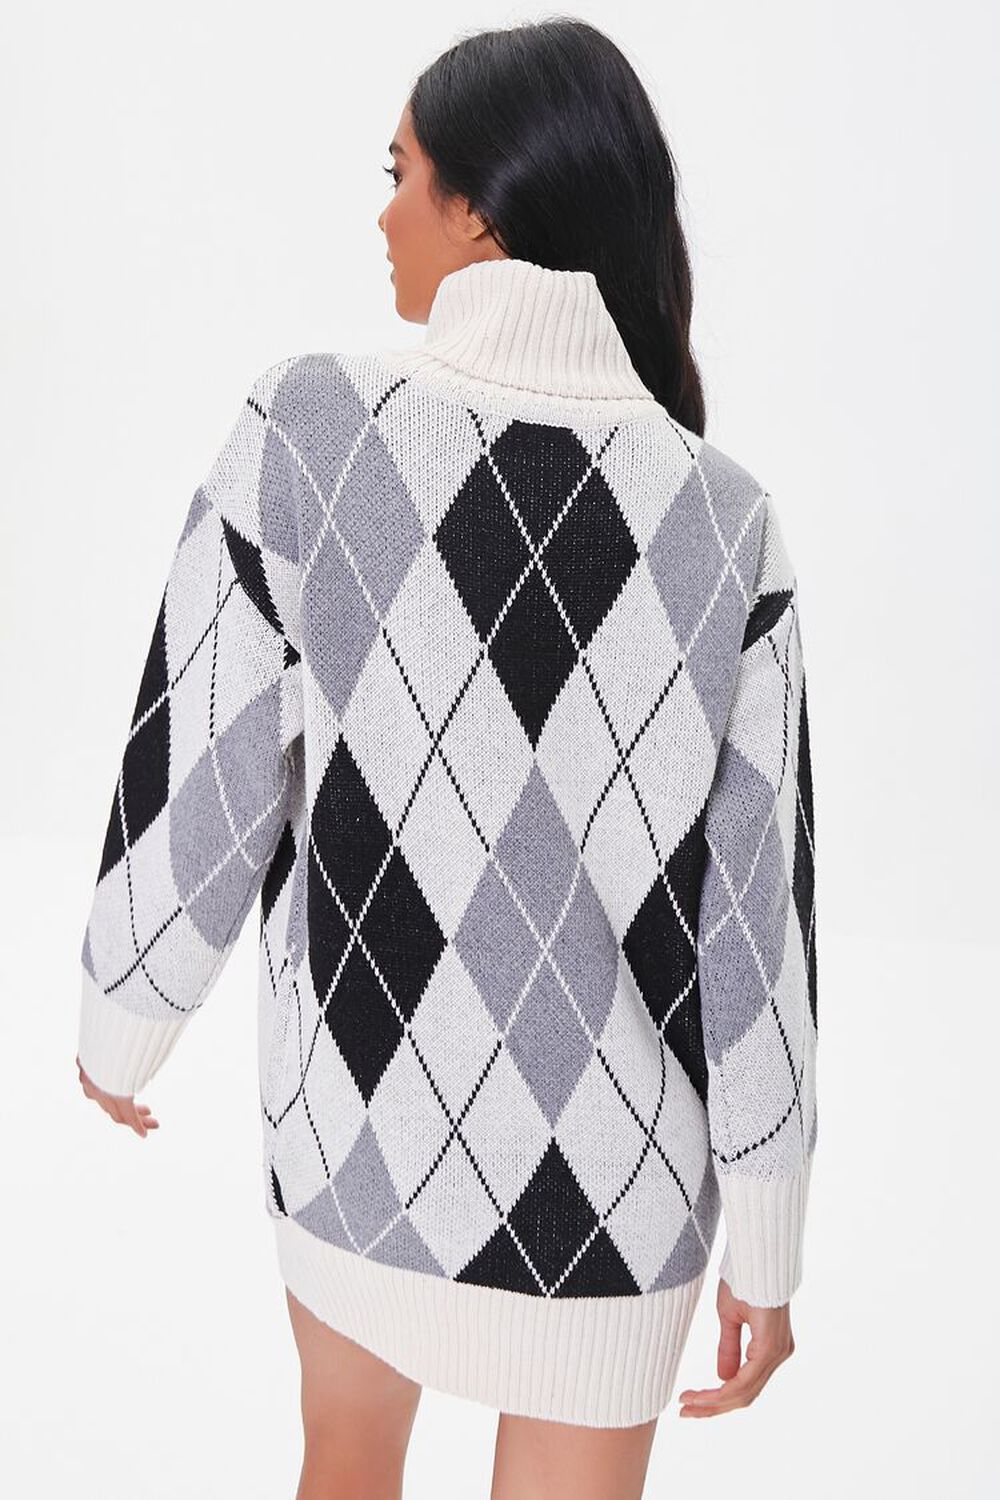 GREY/IVORY Argyle Mini Sweater Dress, image 3